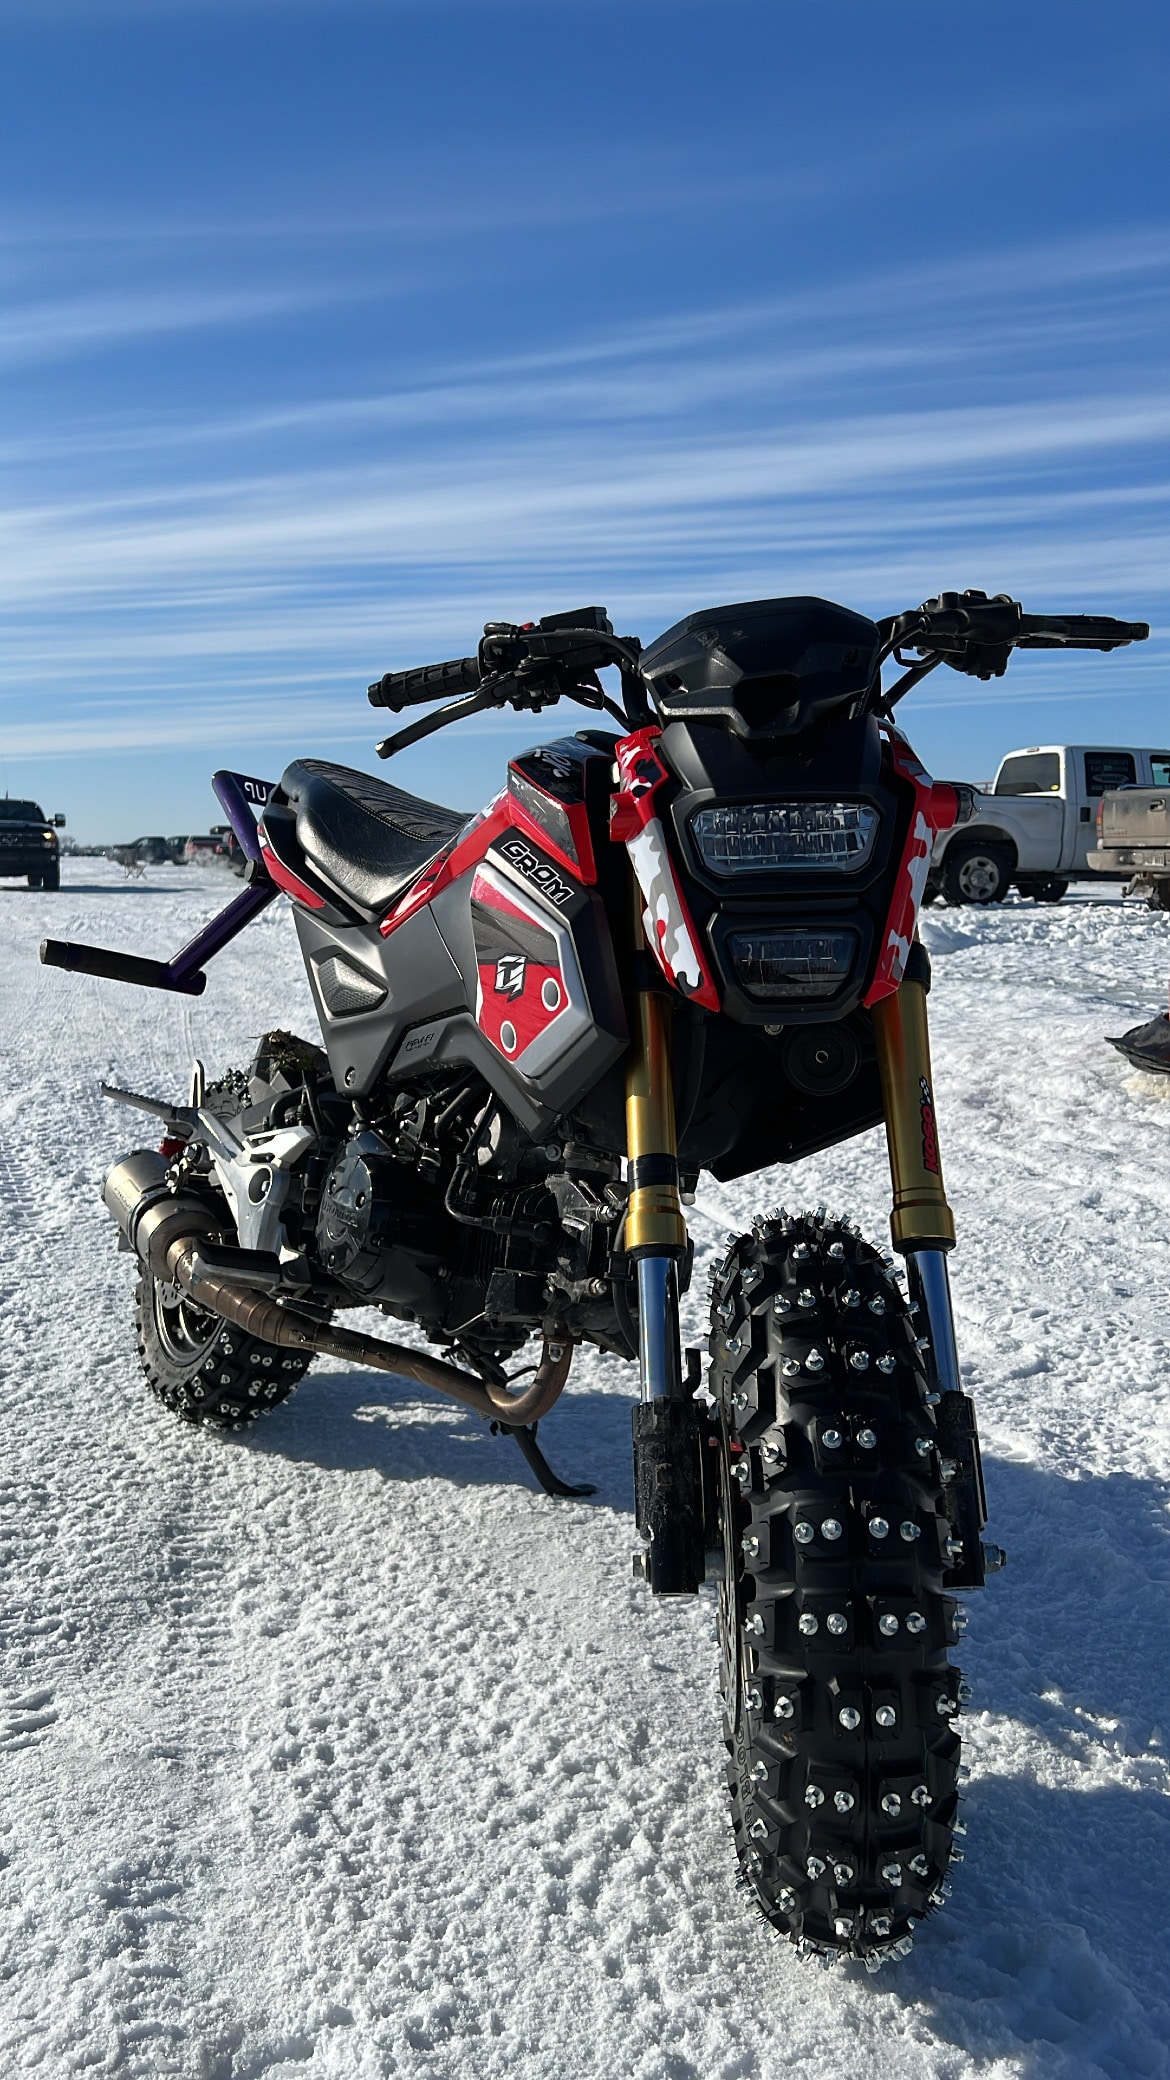 Sur place, on y retrouve plusieurs types de motos adaptée pour la glace.